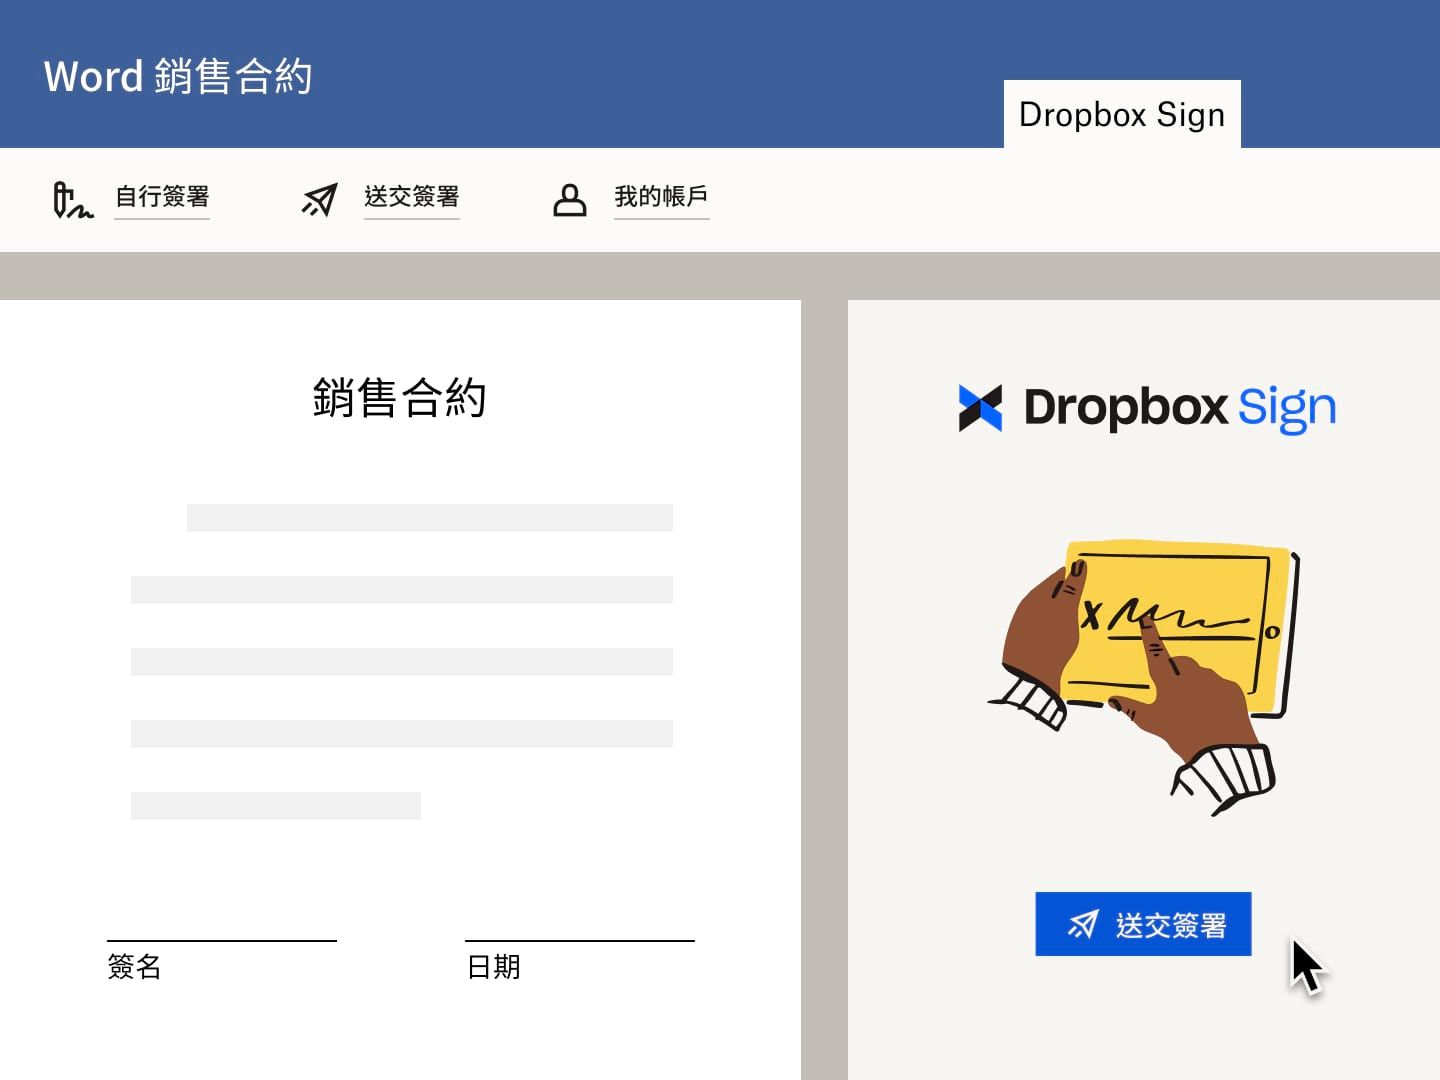 使用者傳送銷售合約的 Microsoft Word 檔案，並用 Dropbox Sign 提出電子簽章要求